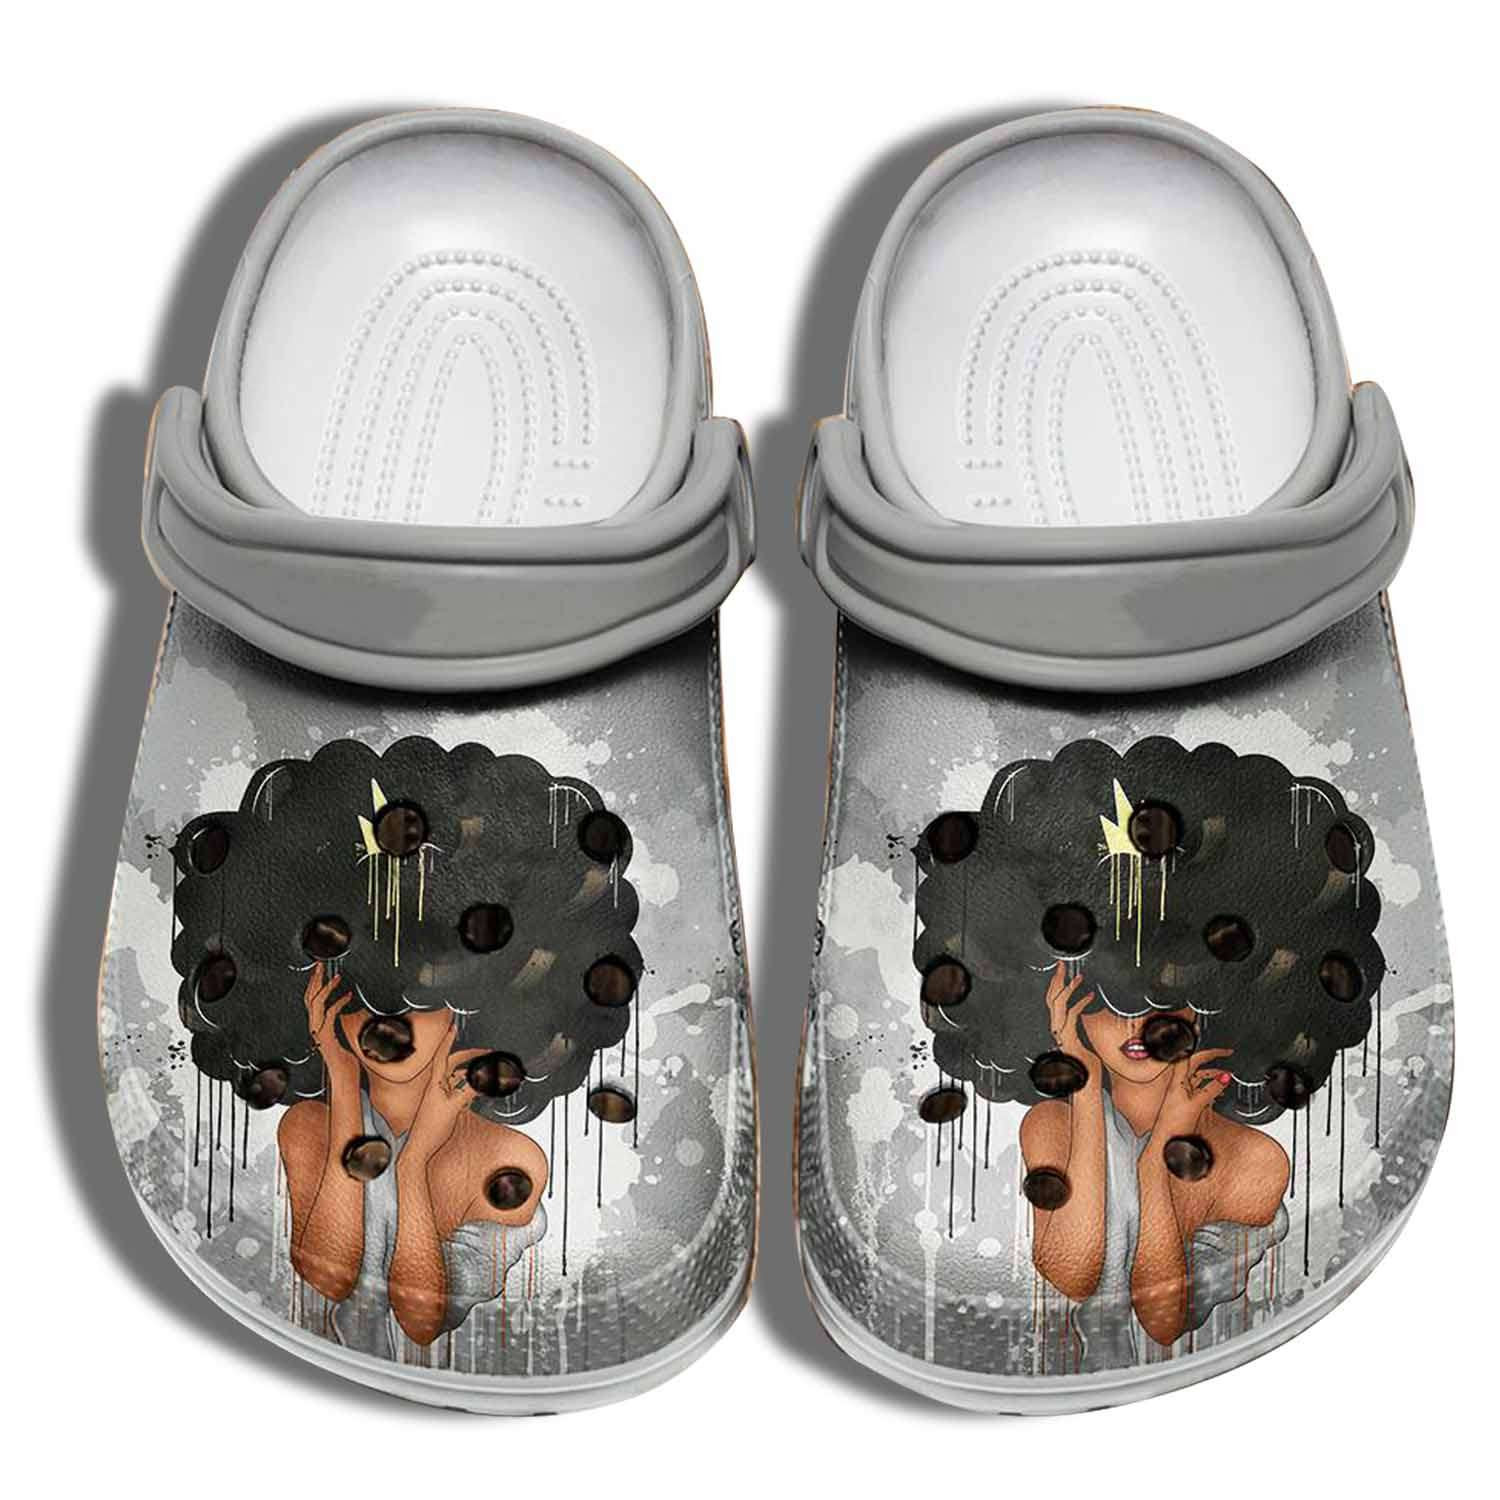 Black Queen Girl Crocs Crocband Clog Shoes